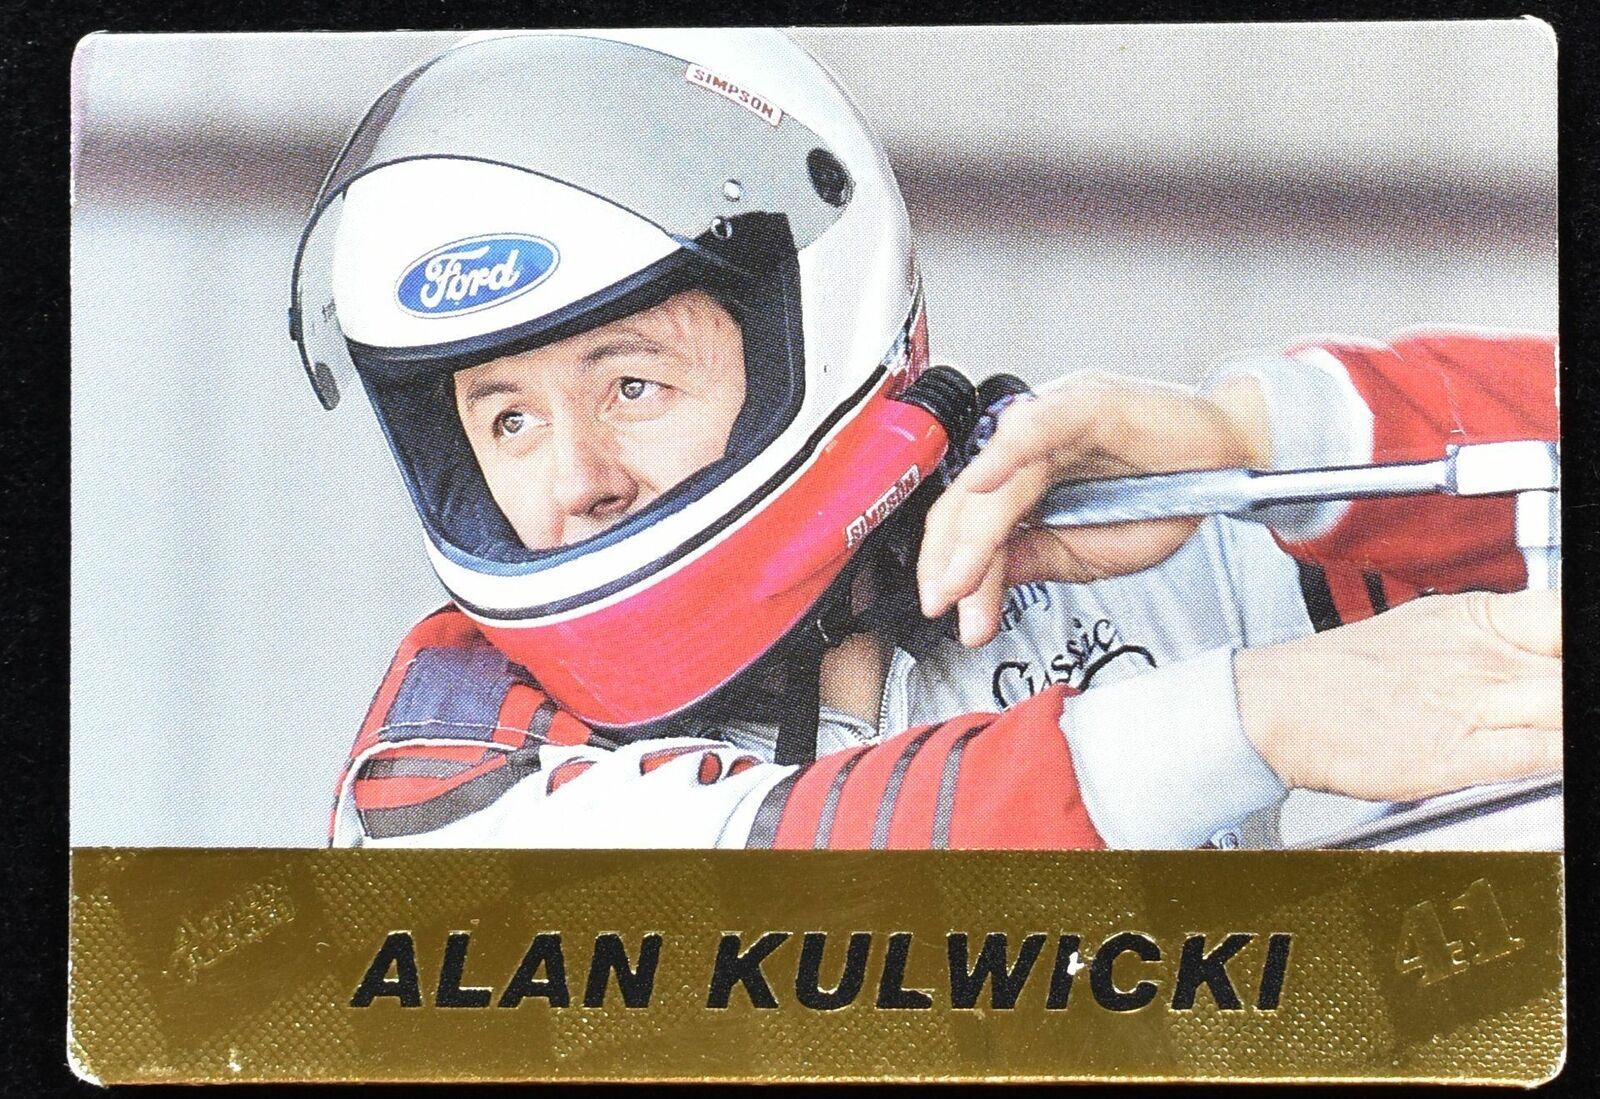 Alan Kulwicki No. 29 1994 Nascar Racing Card